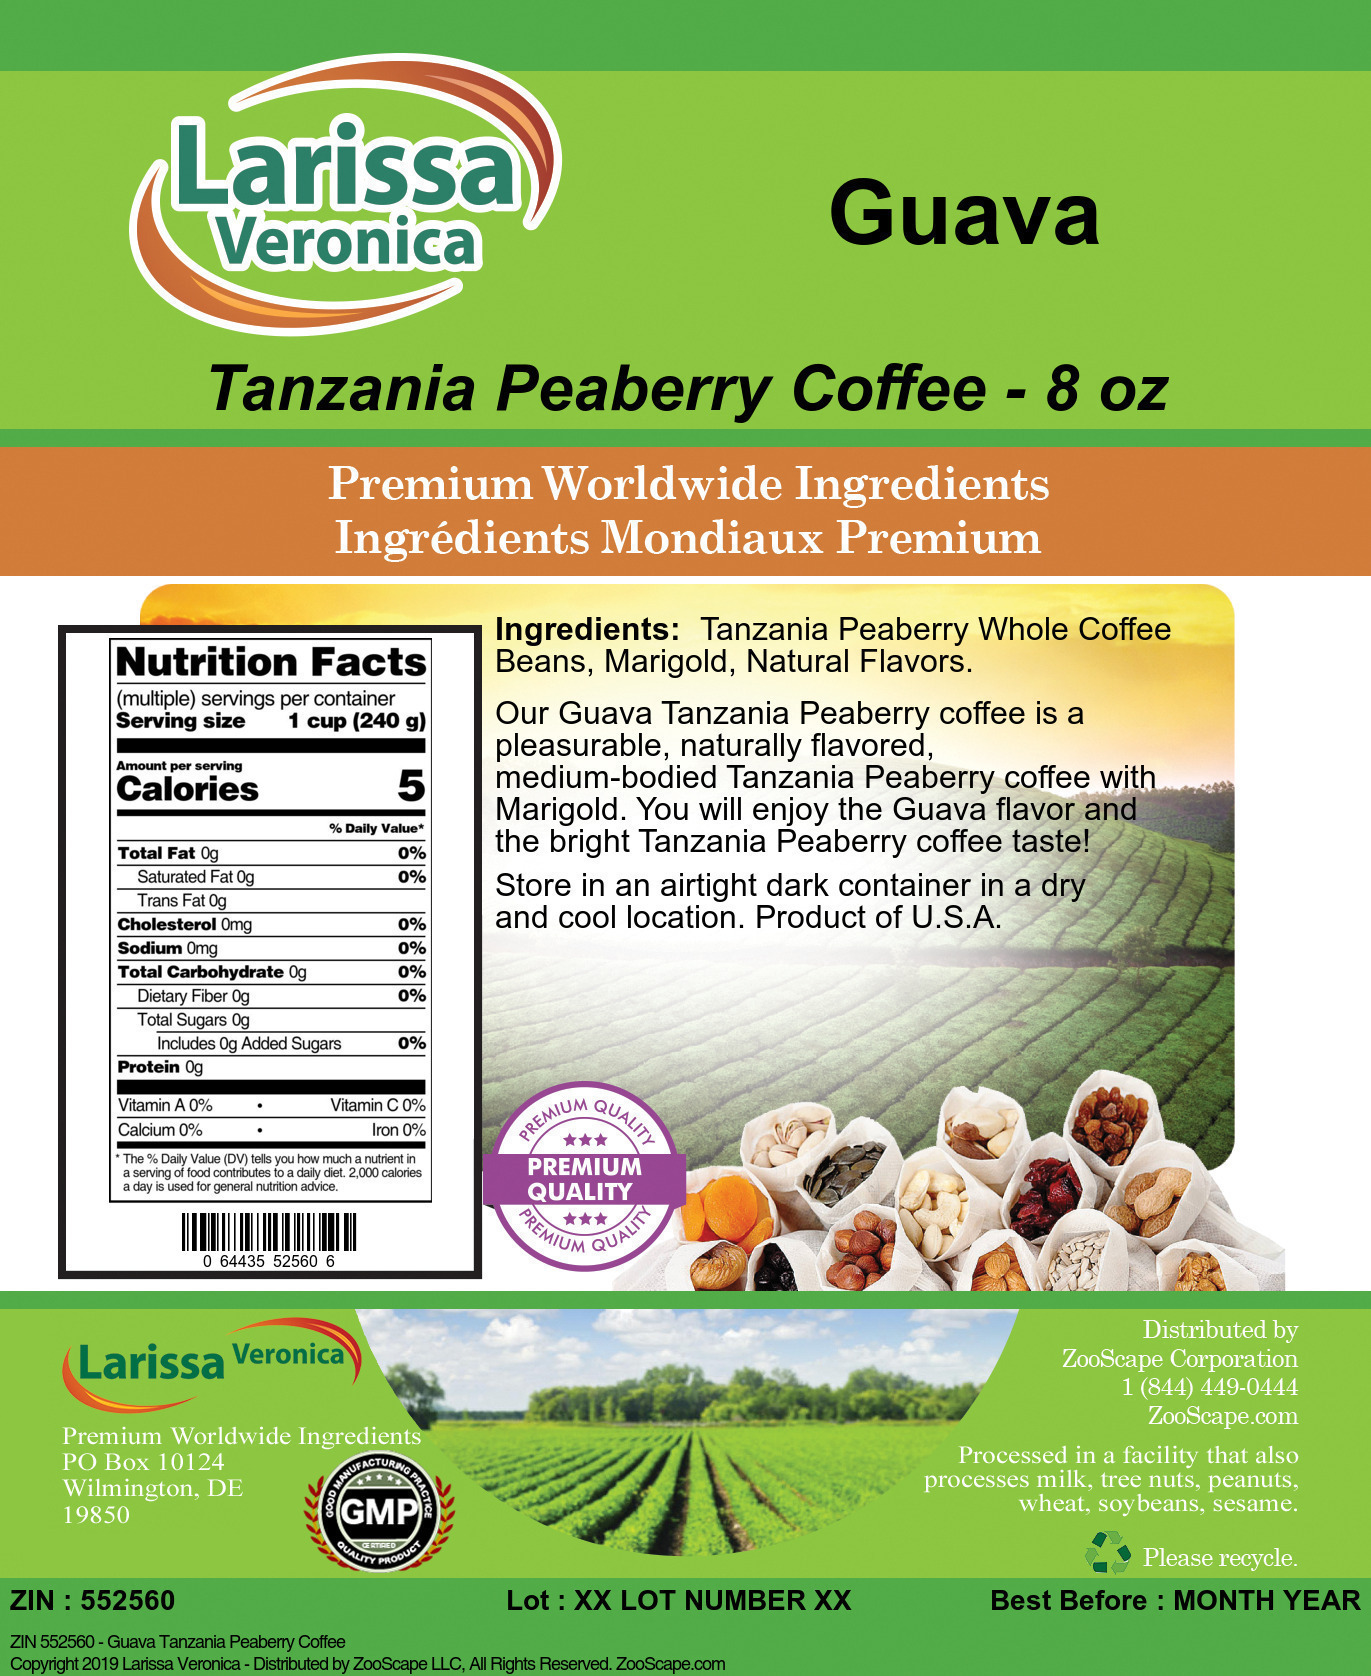 Guava Tanzania Peaberry Coffee - Label